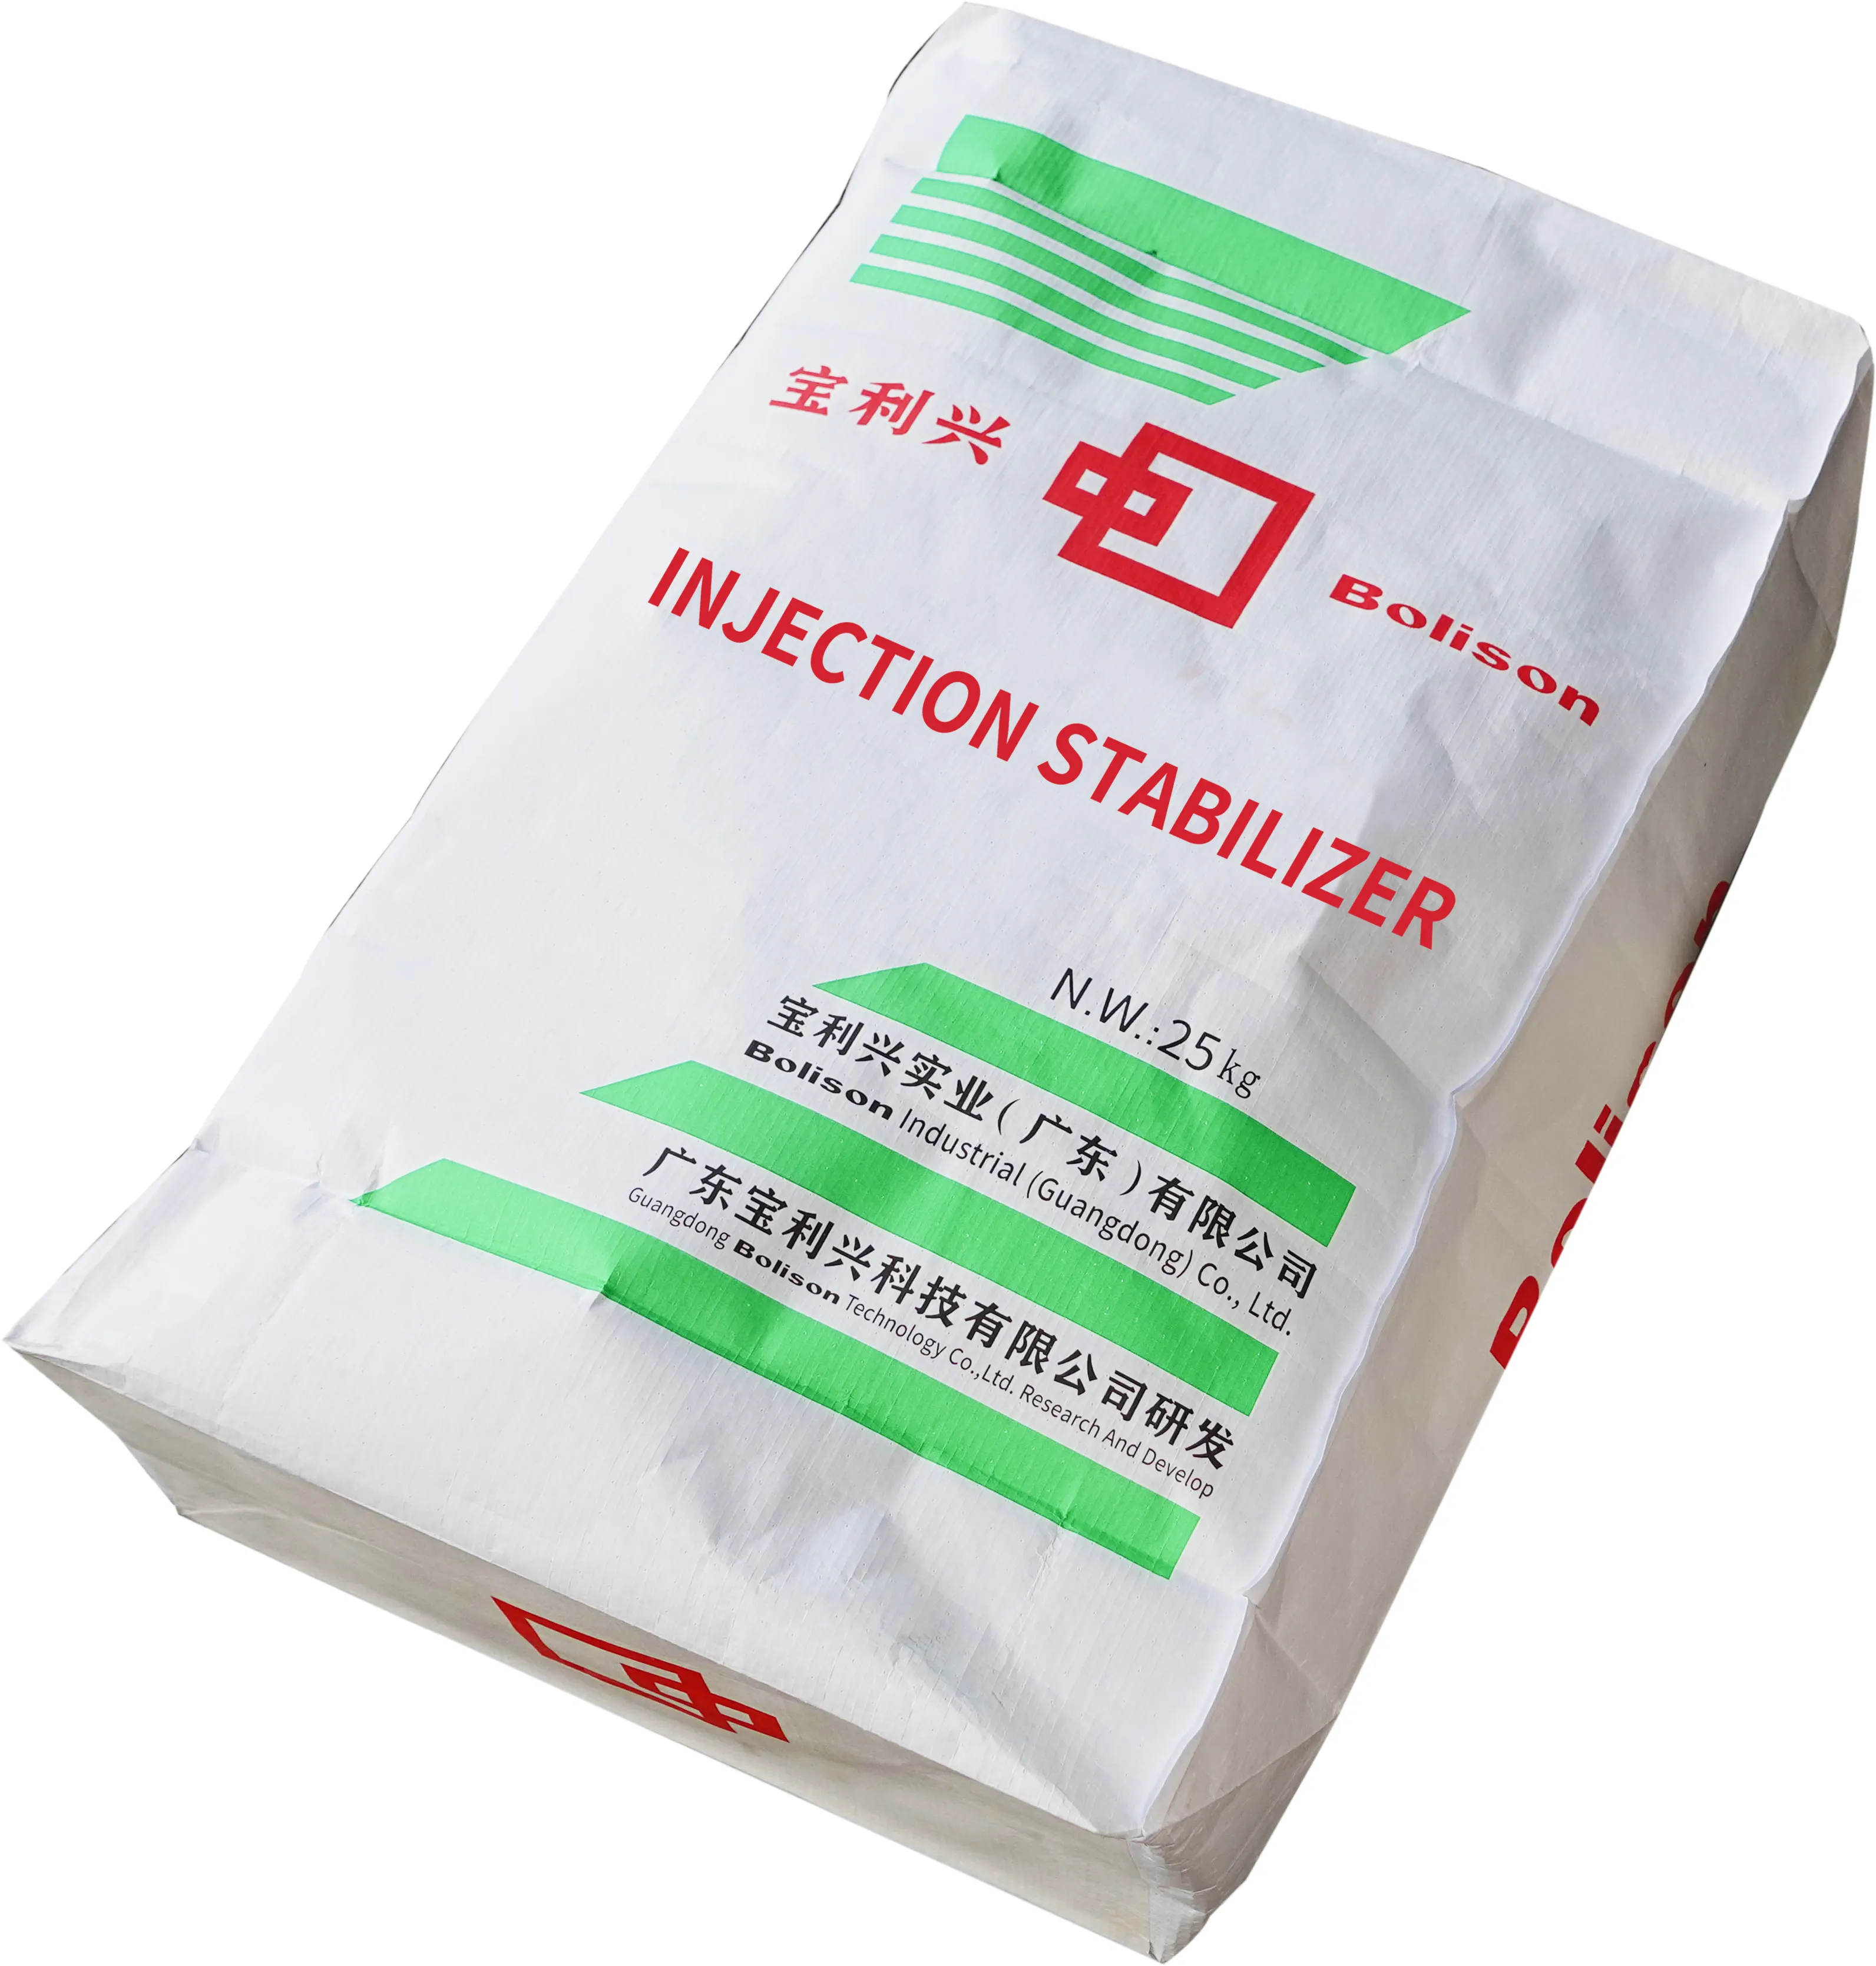 Calcium-Zink-Stabilisator staubfreie Umweltschutzrohre geeigneter effizienter Einspritzstabilisator PvC-Wärmetabilisatoren